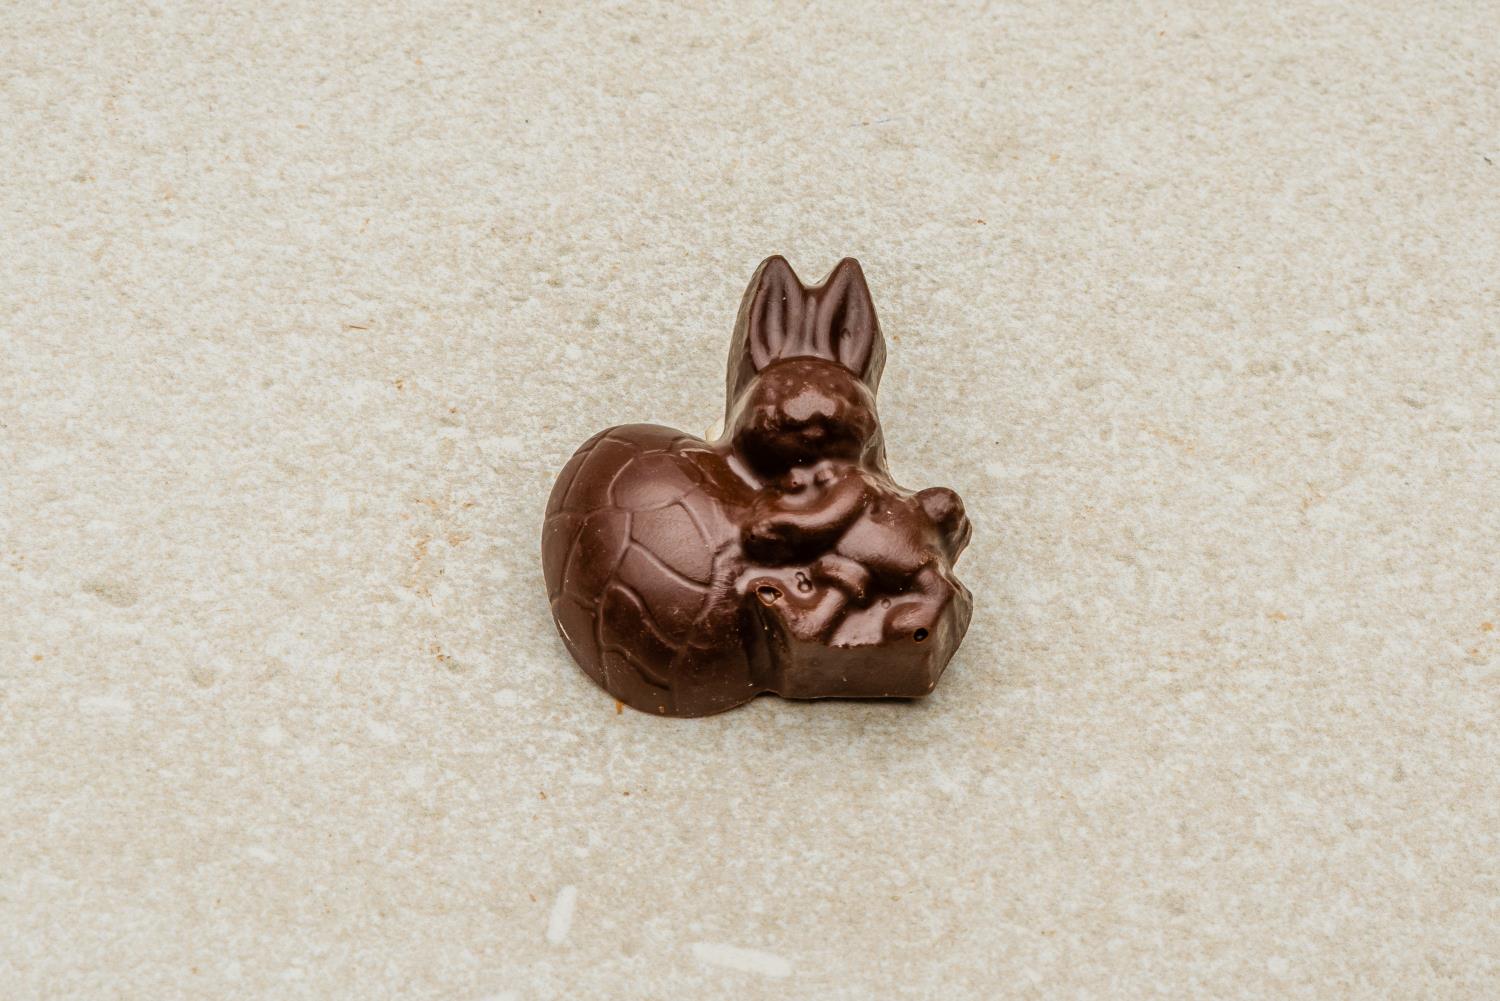 Hare med stort egg mørk sjokolade